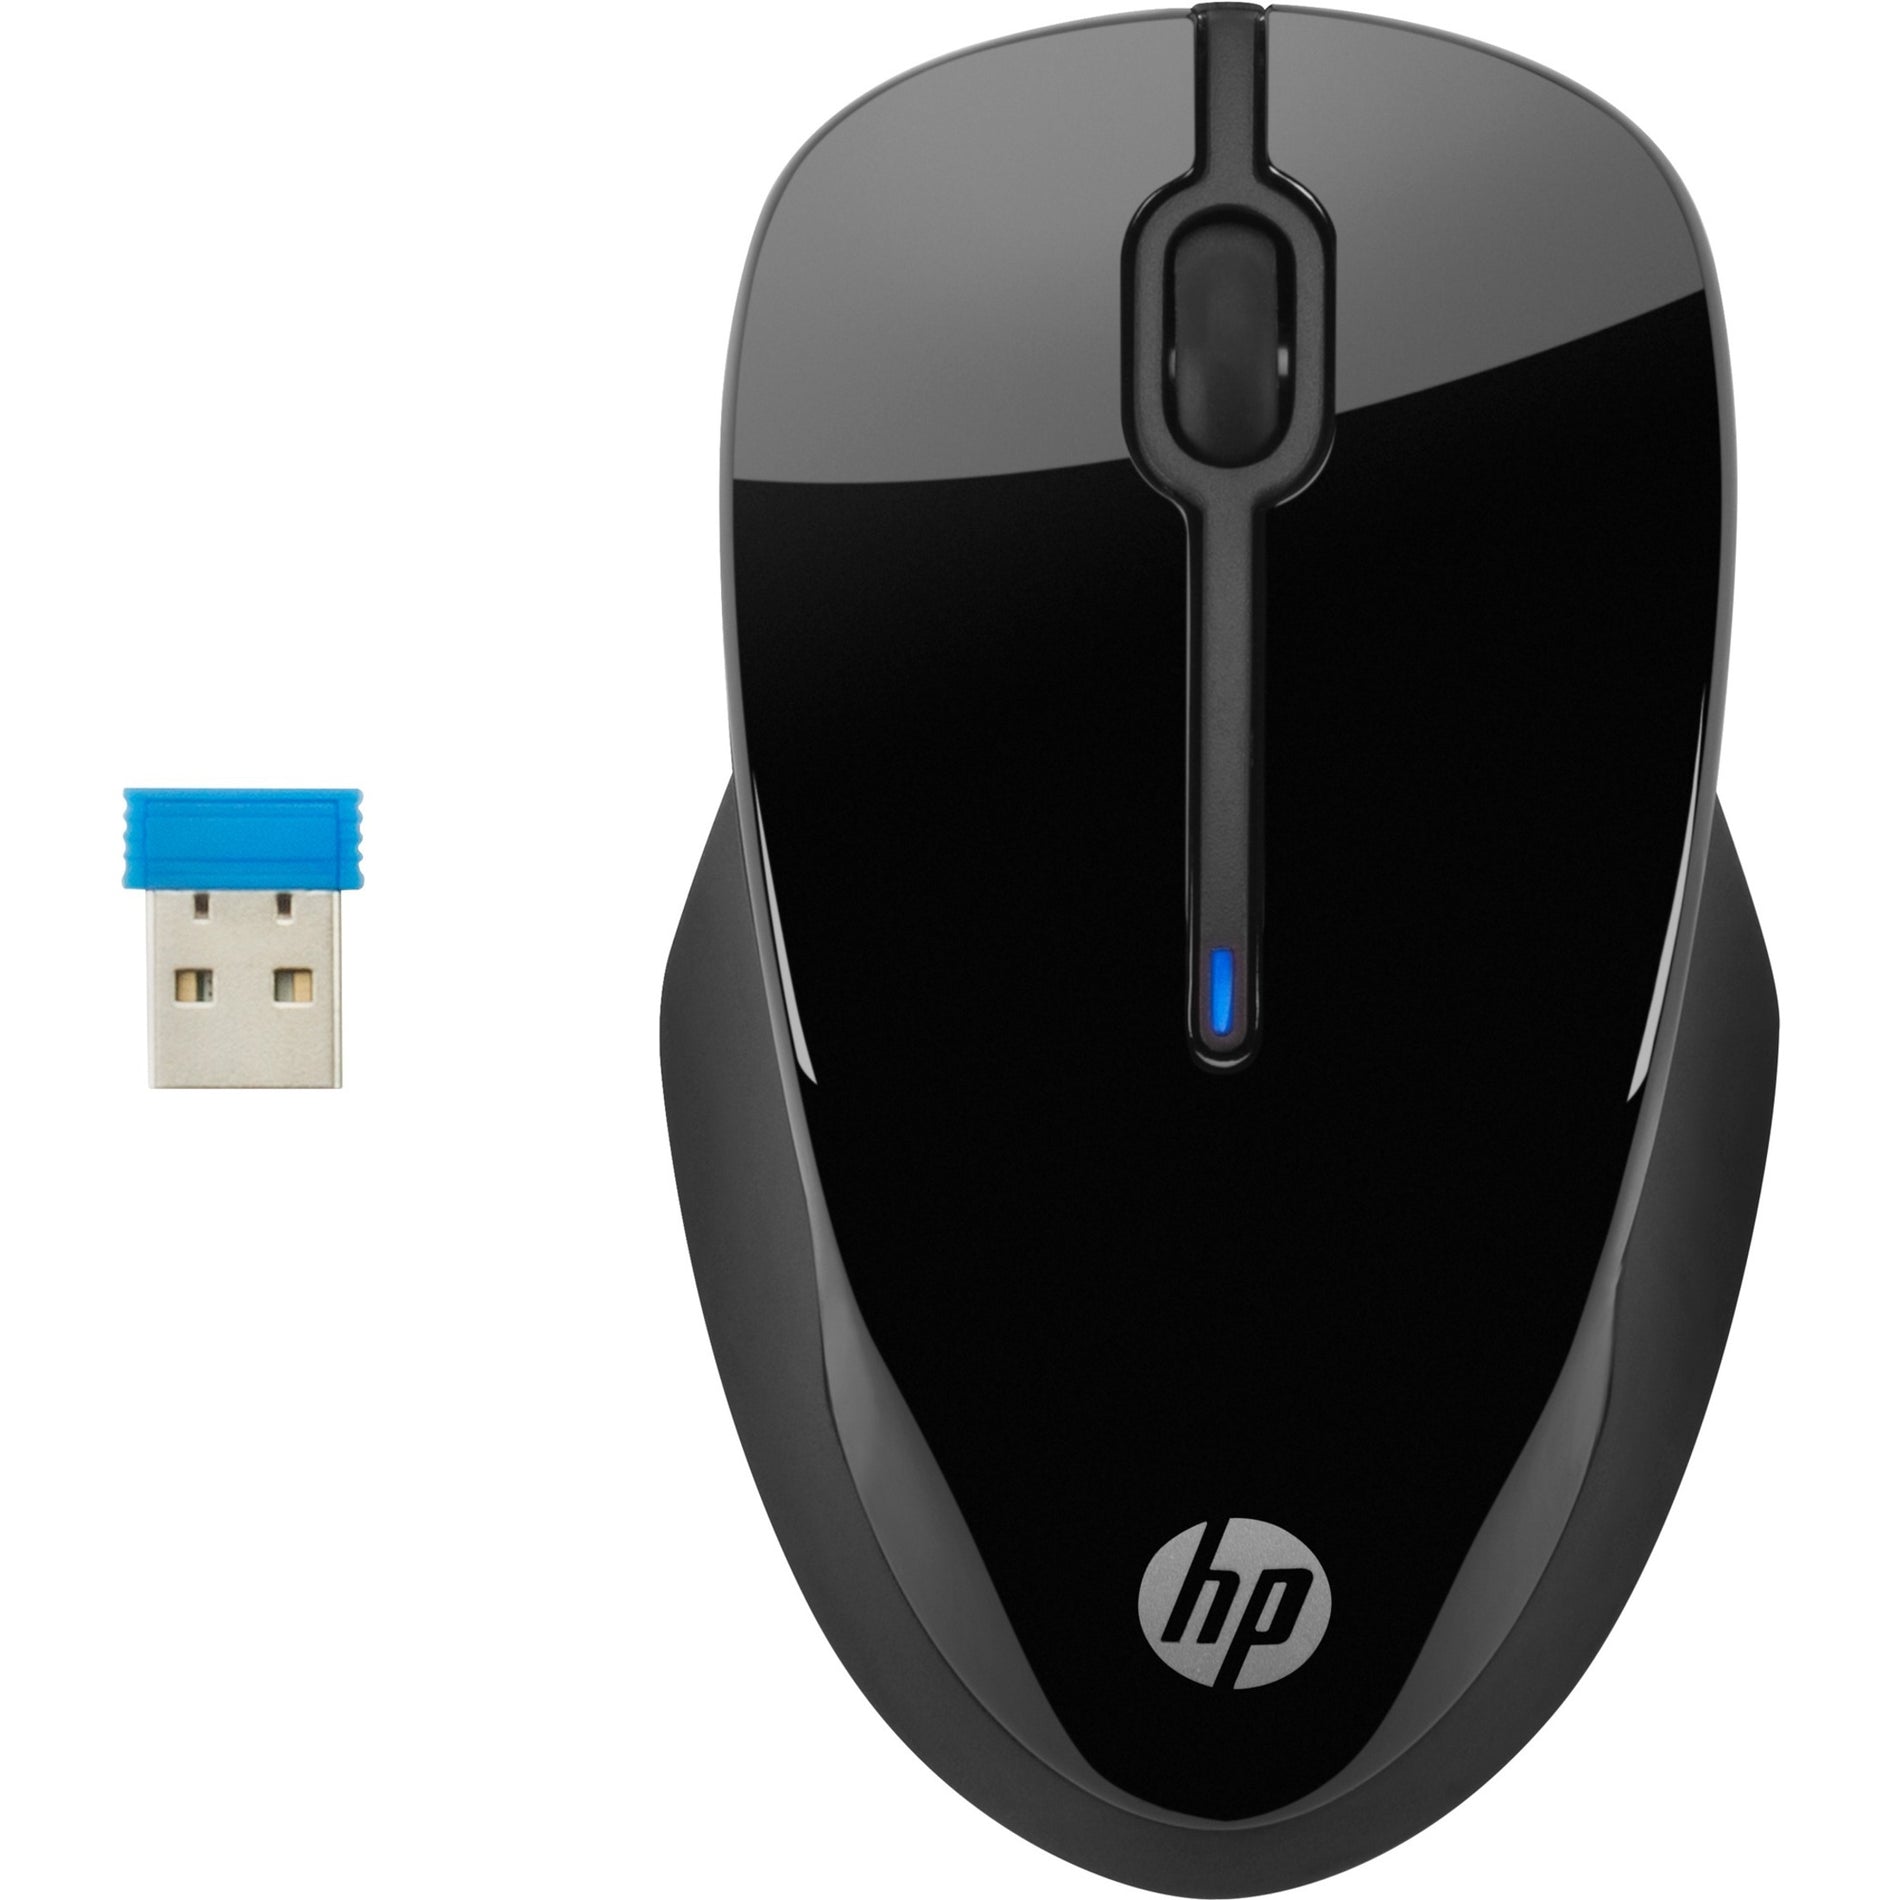 فأر HP X3000 G2 ، بصري لاسلكي ، USB Type A ، أسود العلامة التجارية: HP ترجمة العلامة التجارية: إتش بي